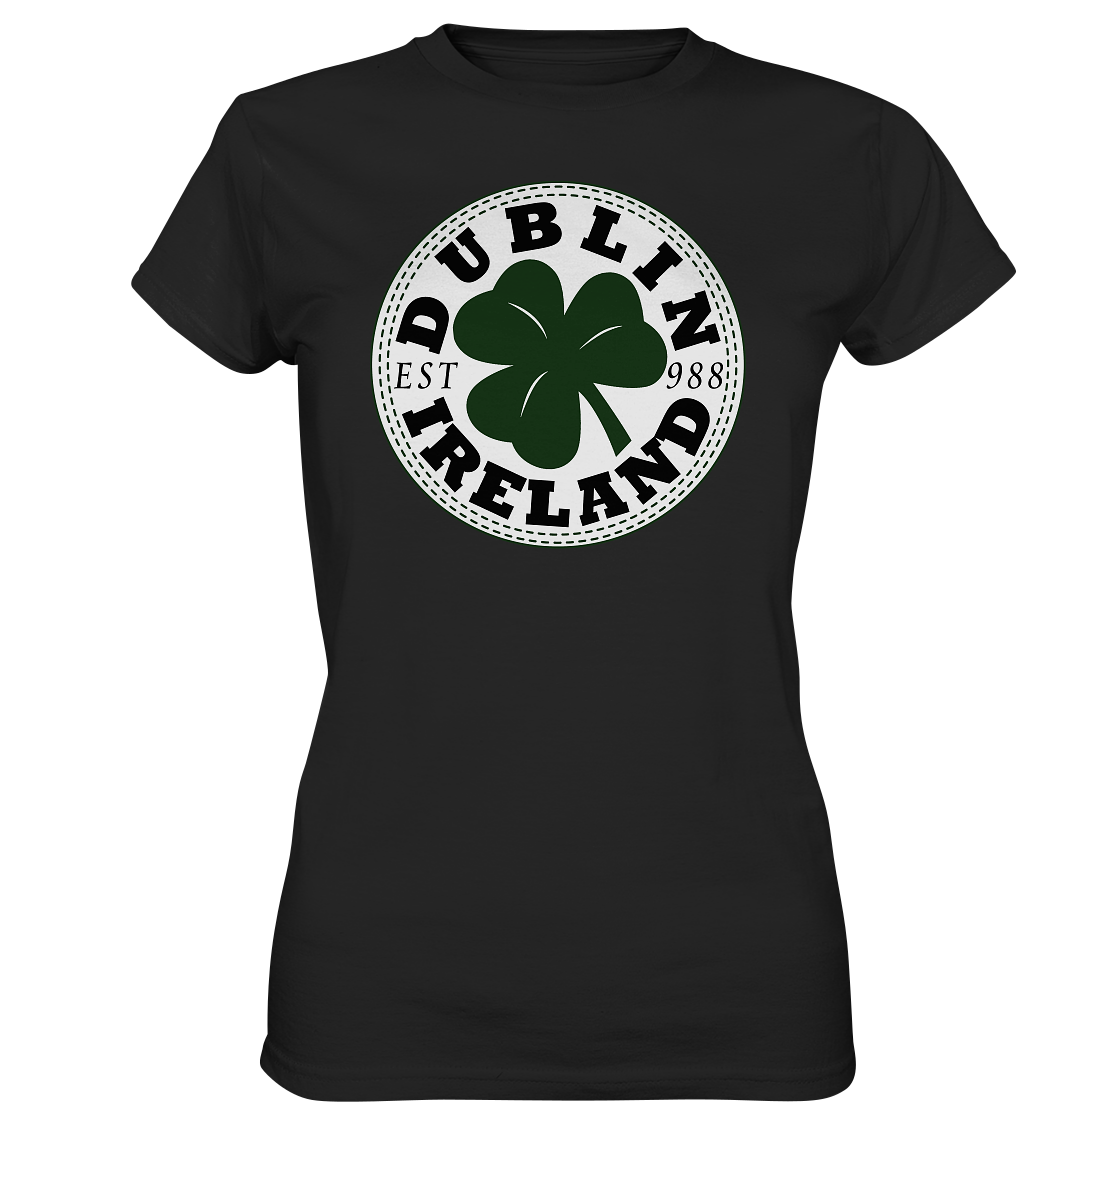 Dublin "Ireland / Est 988" - Ladies Premium Shirt